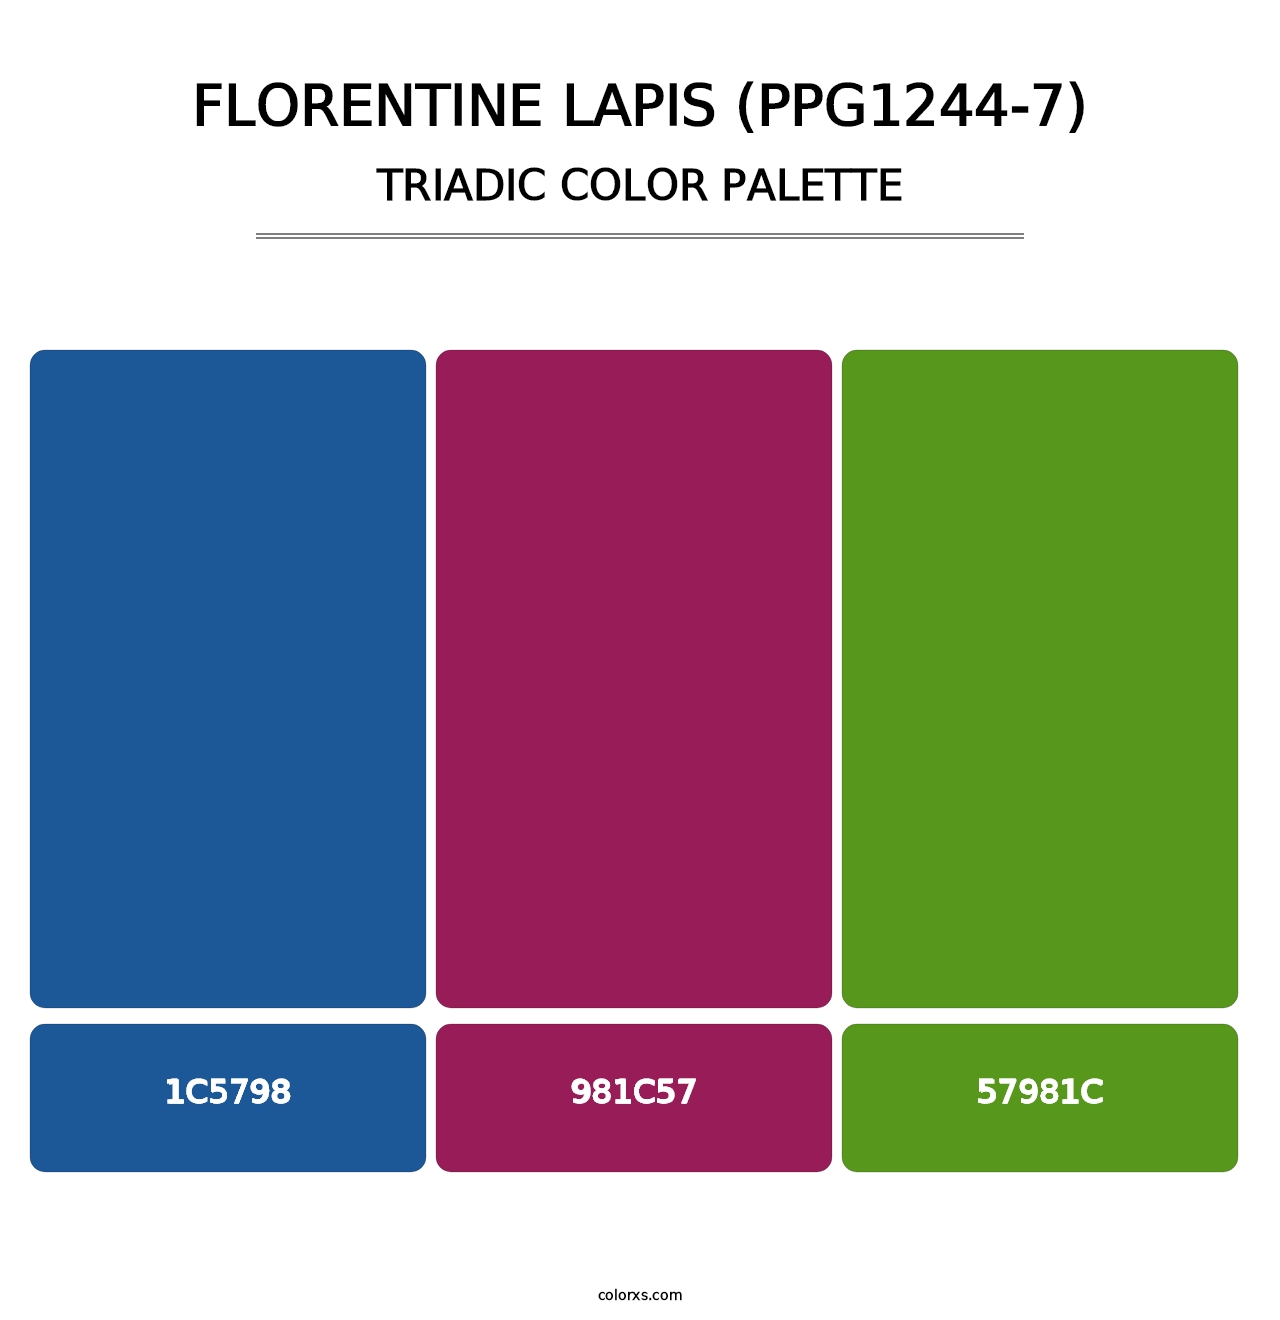 Florentine Lapis (PPG1244-7) - Triadic Color Palette